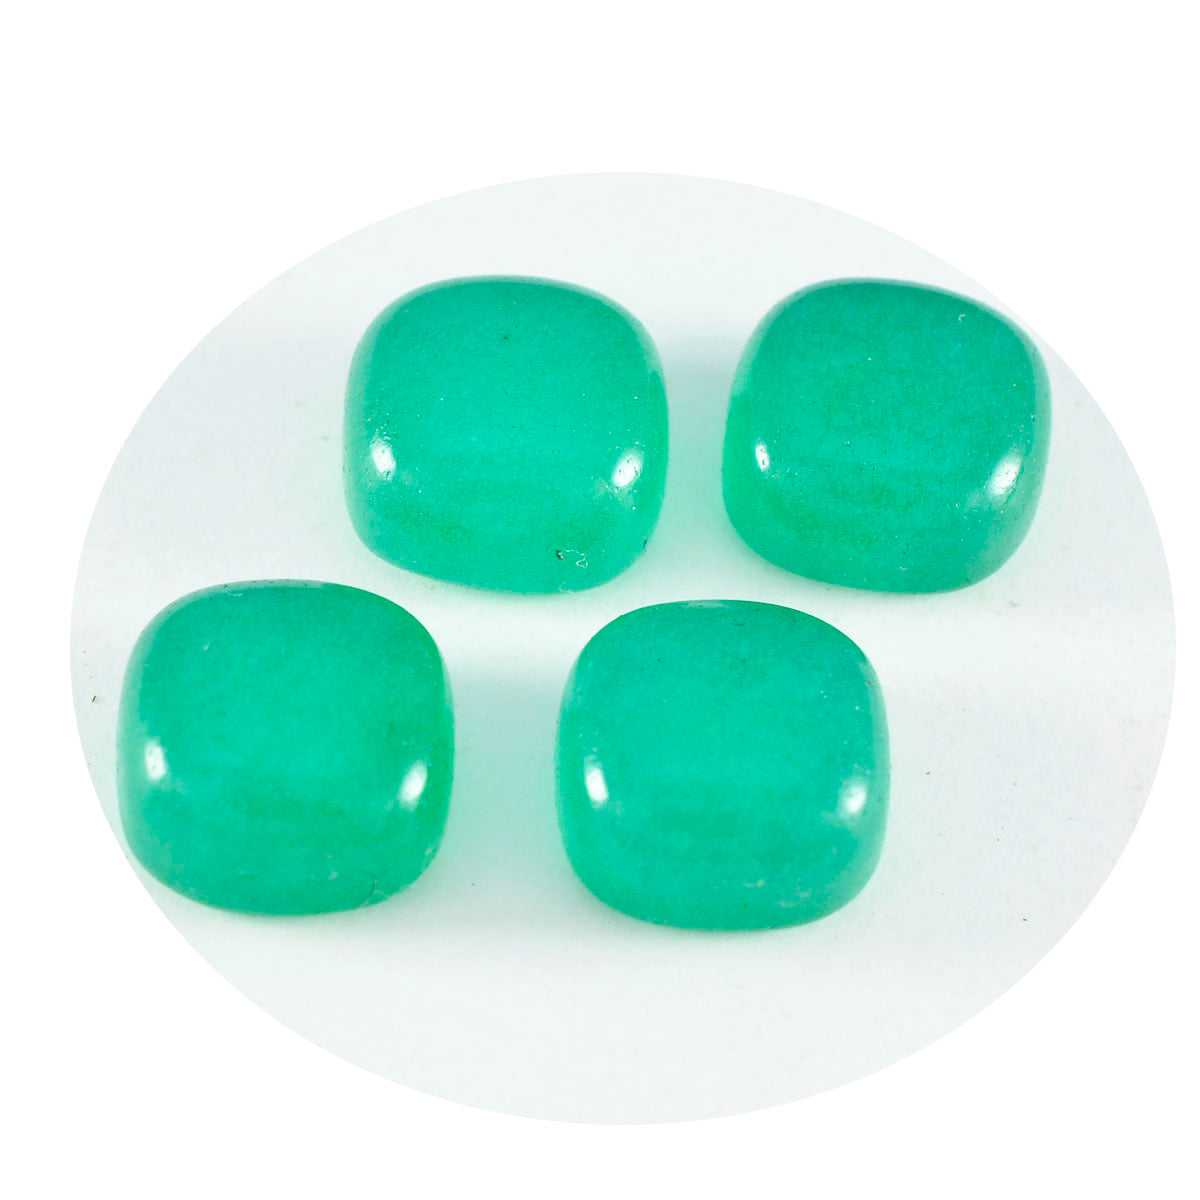 riyogems 1 шт., зеленый оникс, кабошон 6x6 мм, форма подушки, качество, свободный камень